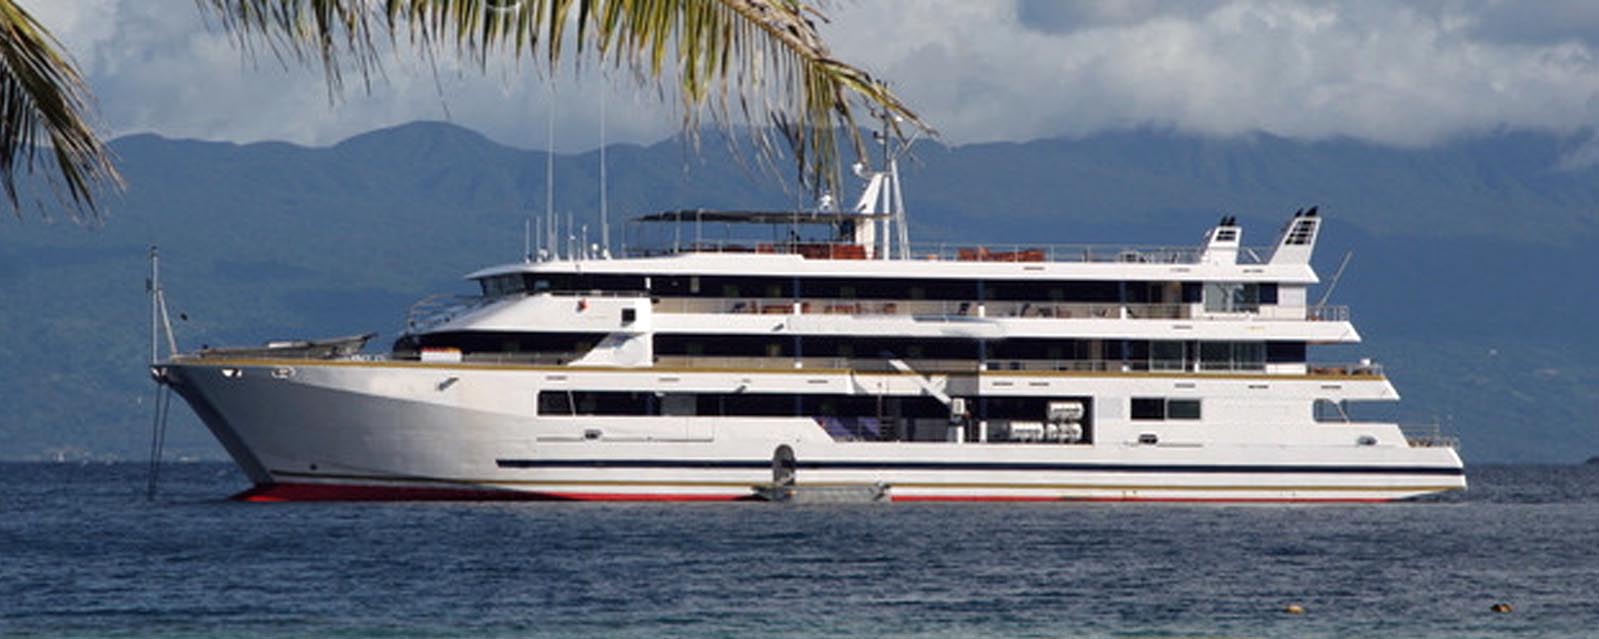 1998 Custom Catamaran Cruise Ship